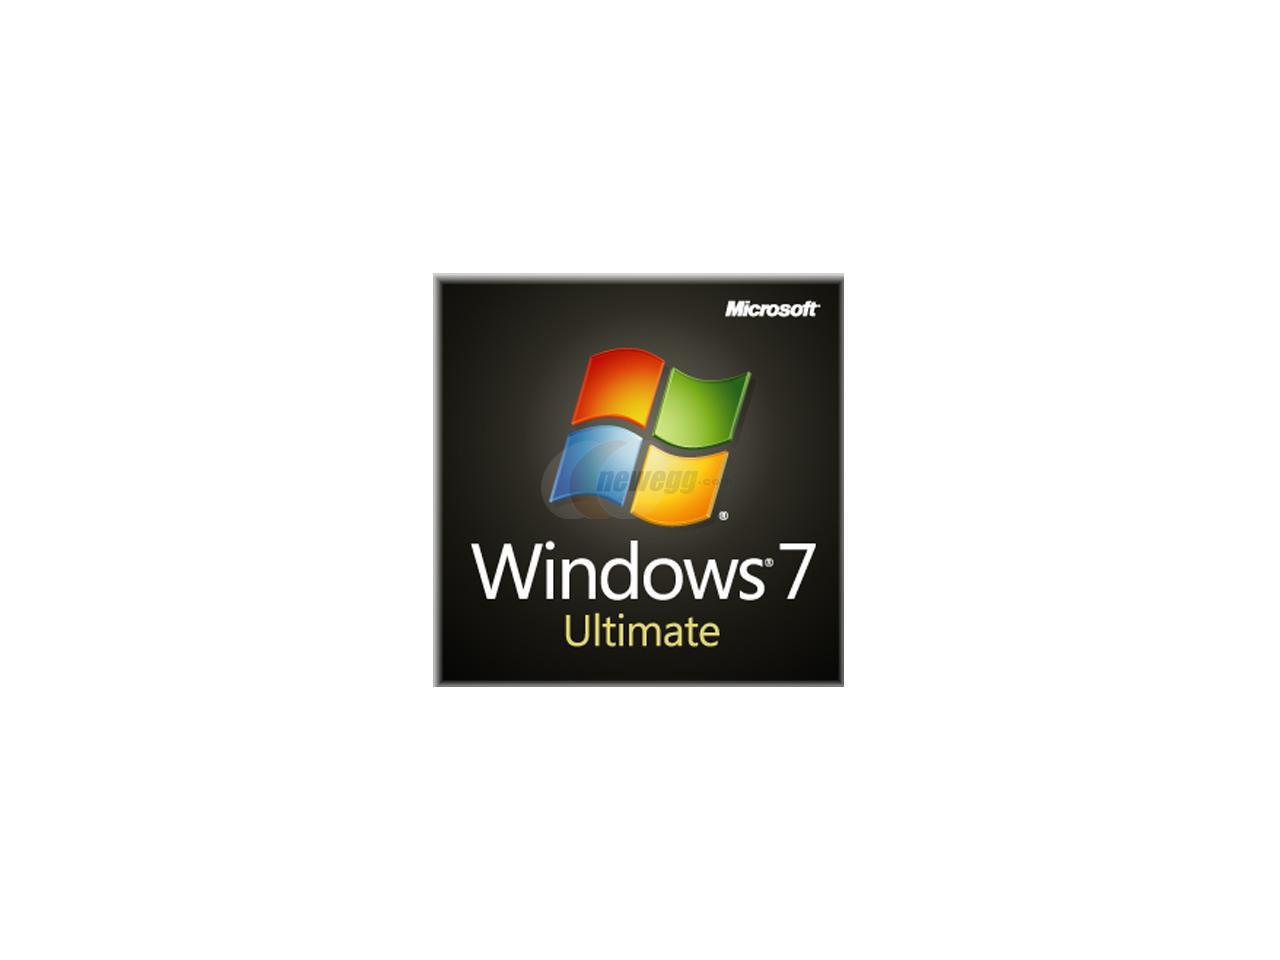 windows 7 ultimate 64bit